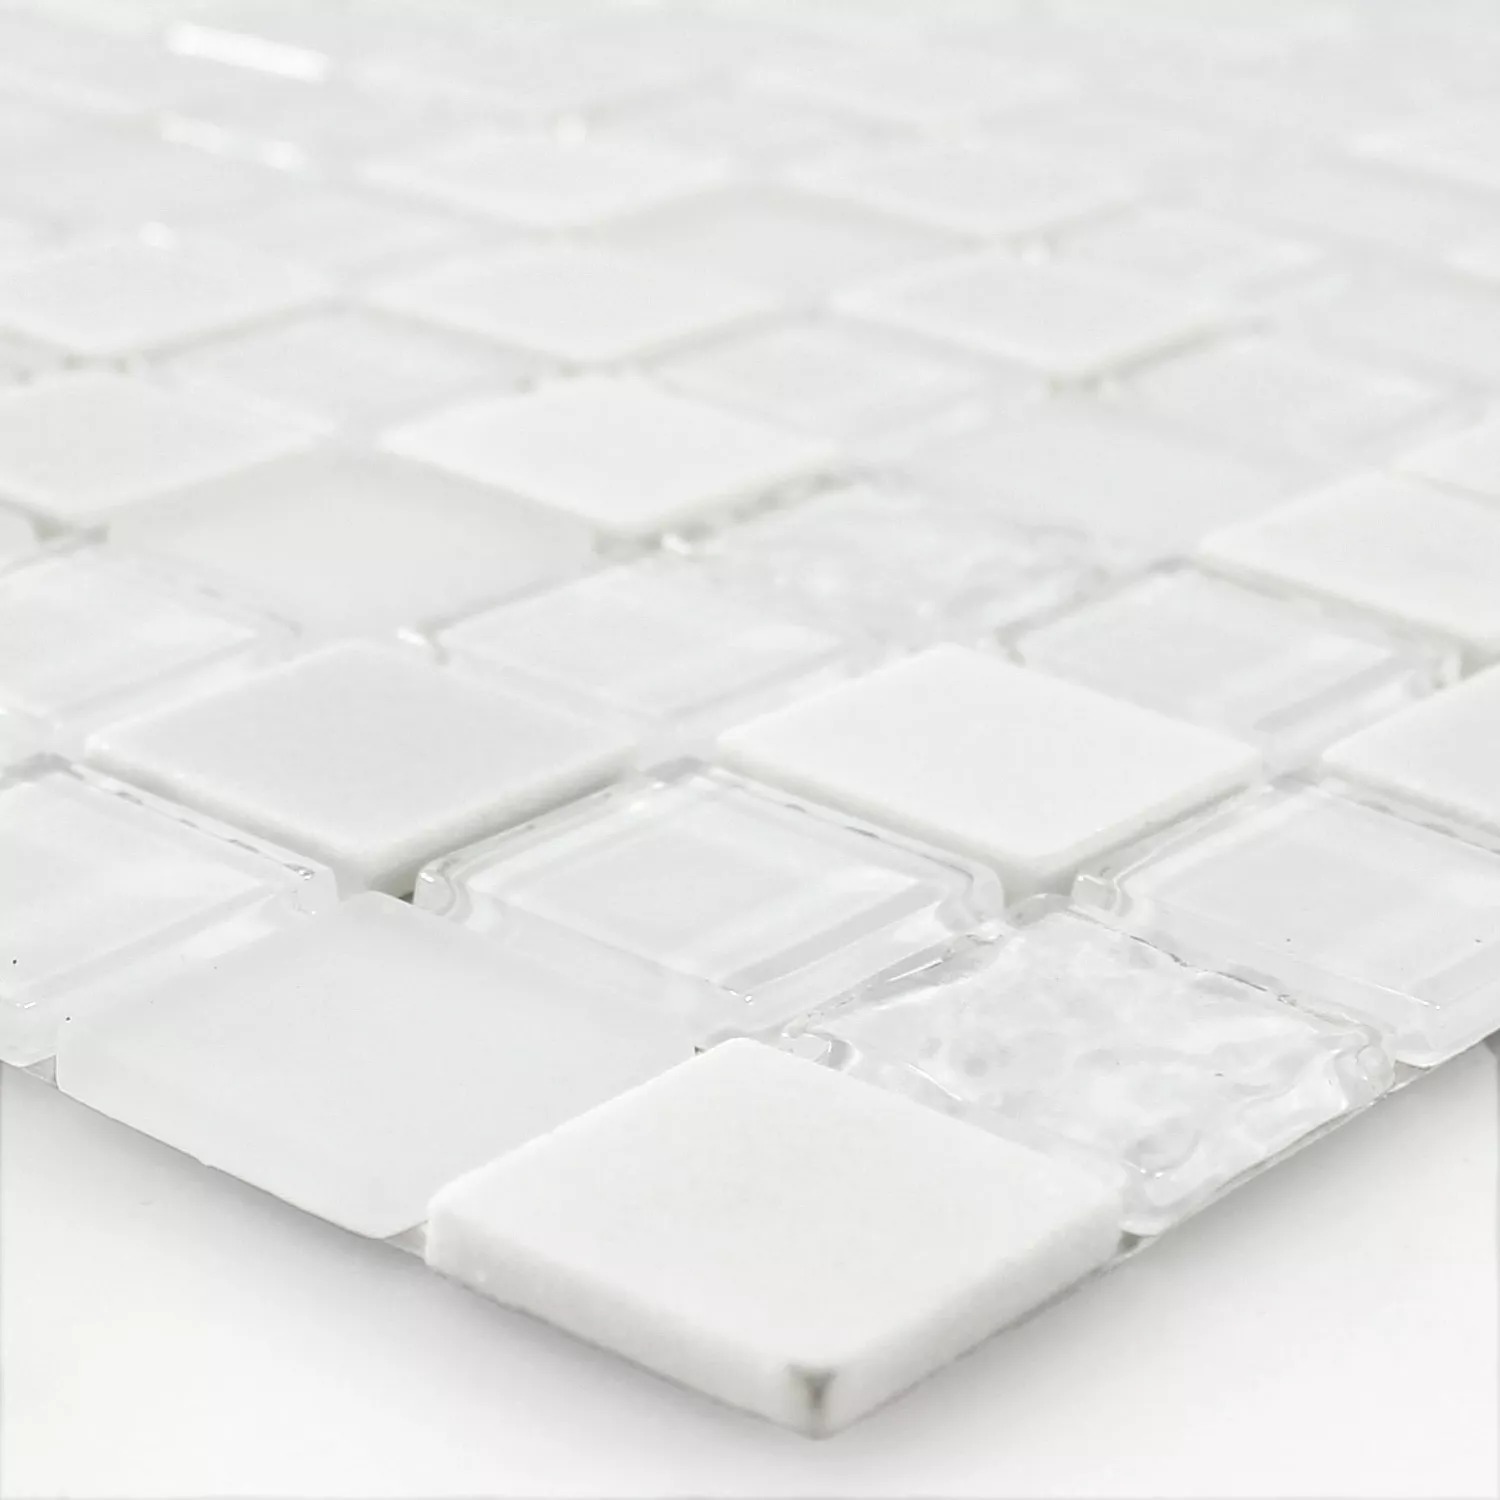 Sample Zelfklevende Mozaïek Natuursteen Glas Mix Wit